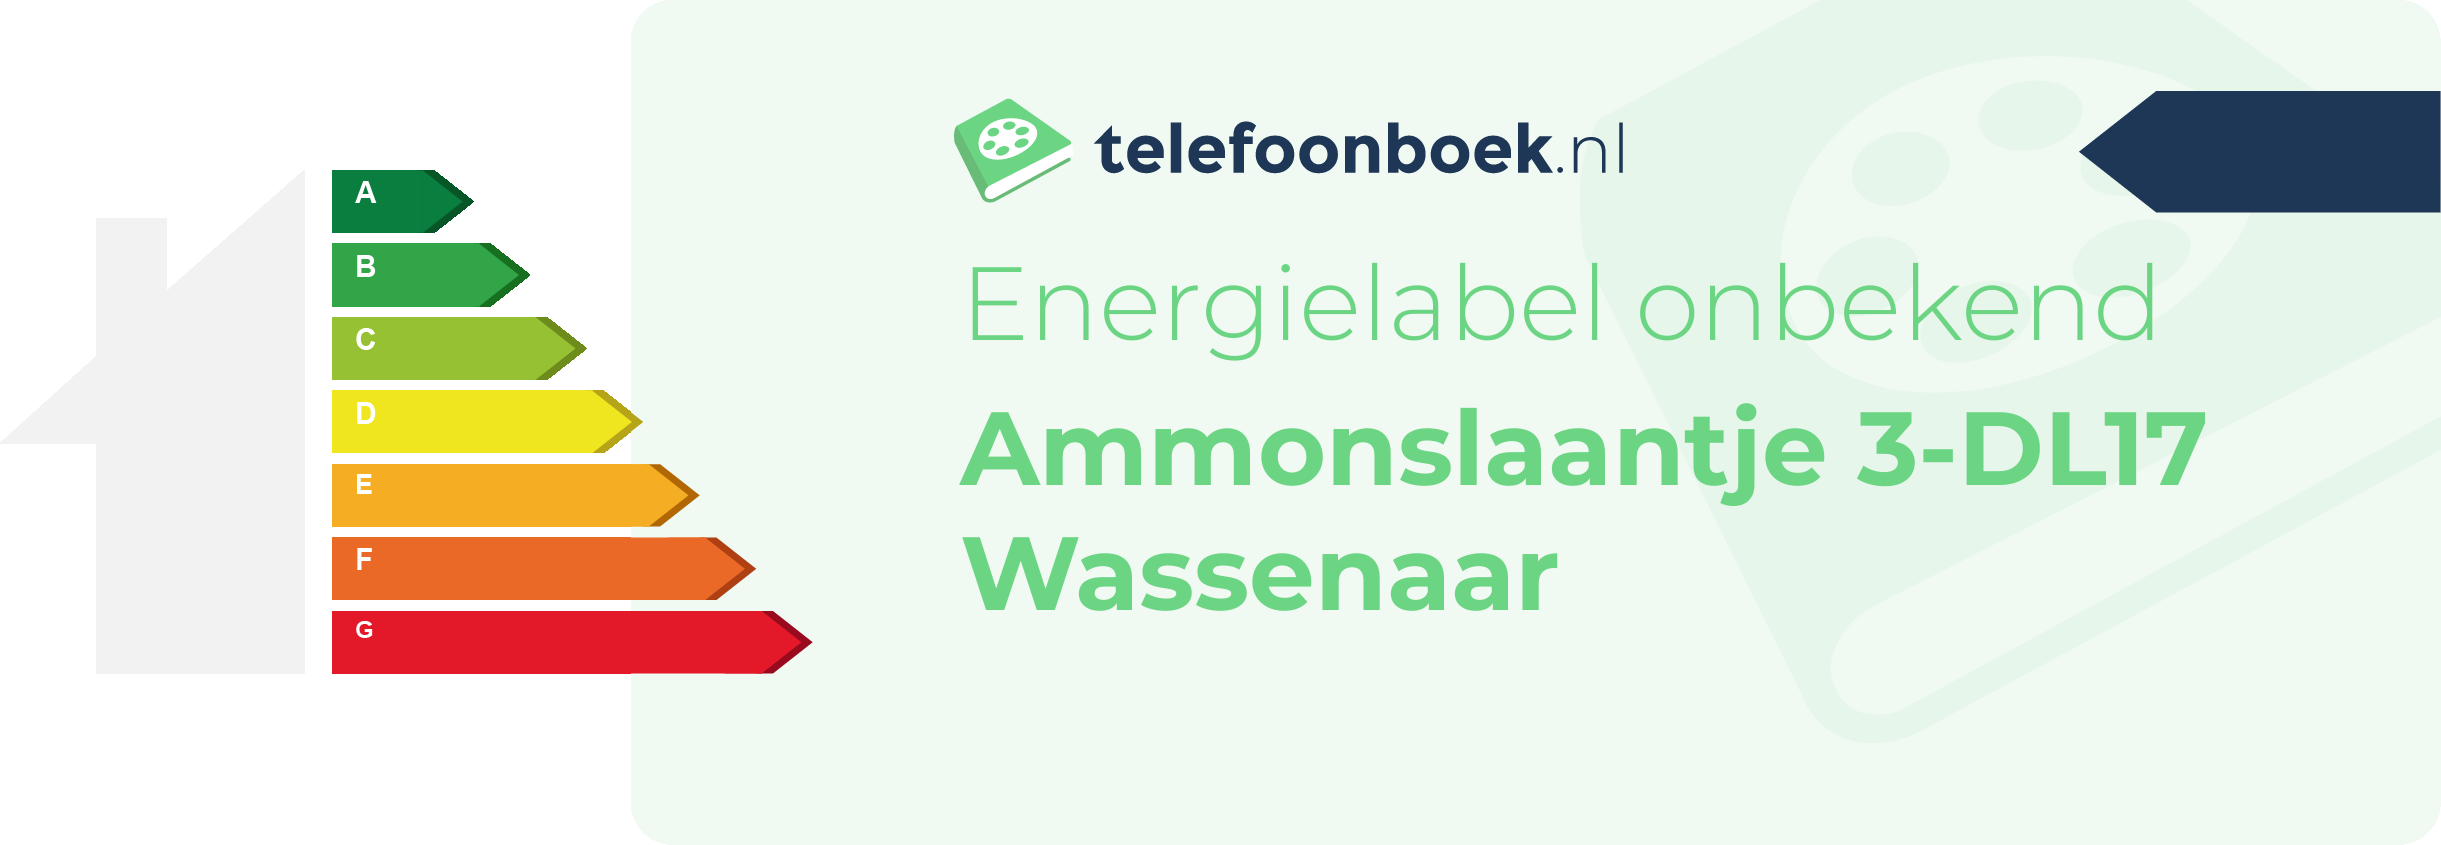 Energielabel Ammonslaantje 3-DL17 Wassenaar